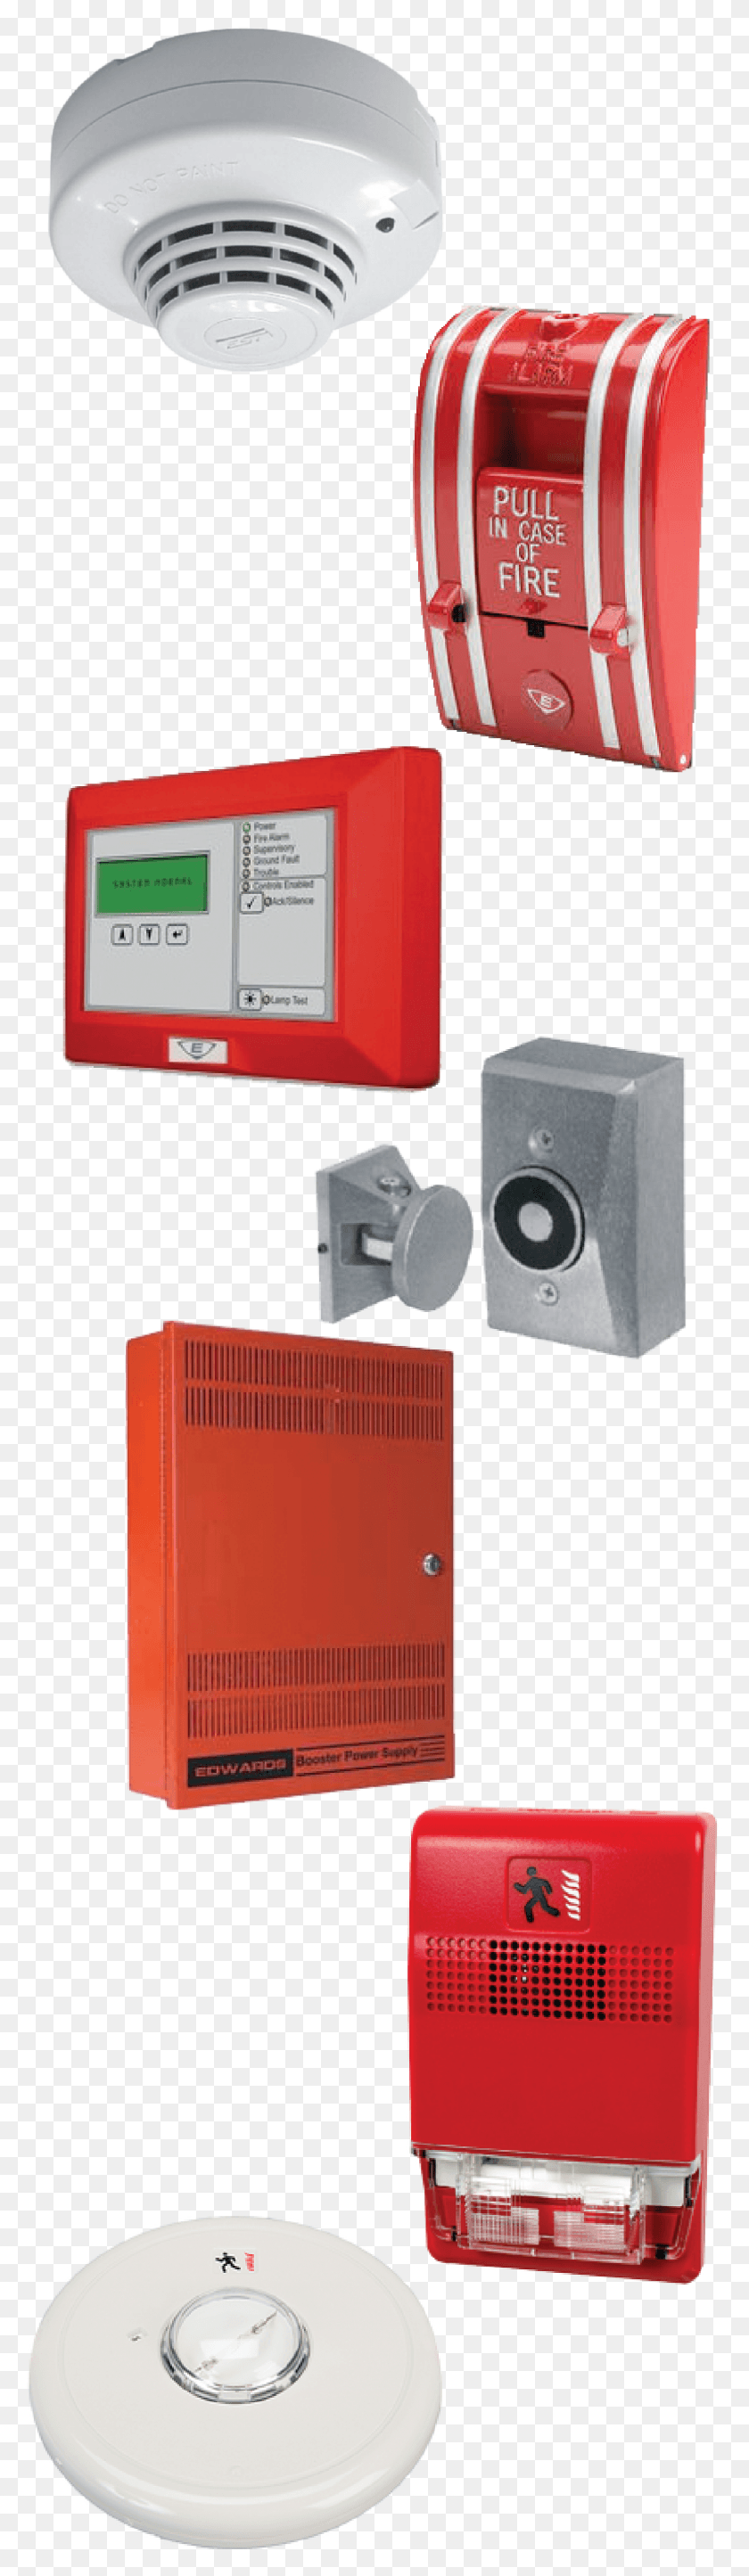 1187x4308 Descargar Png Edwards Signaling Productos De Alarma De Incendio Electrónica, Dispositivo Eléctrico, Altavoz, Altavoz De Audio Hd Png